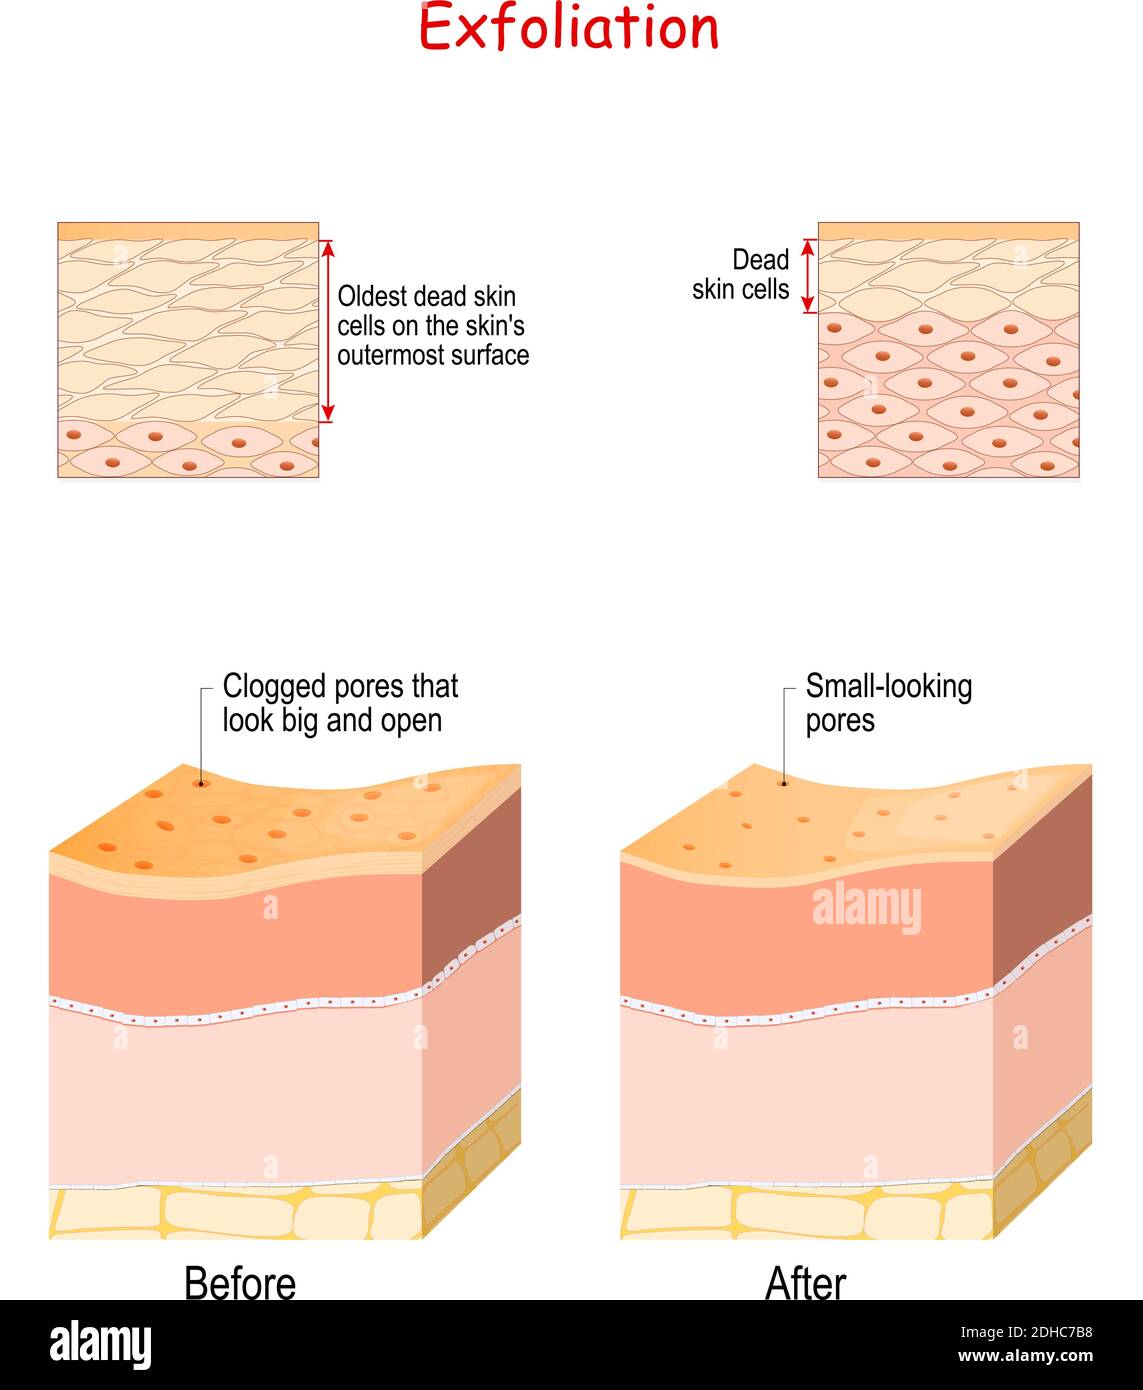 L'exfoliation est l'élimination des anciennes cellules mortes de la peau sur la surface externe de la peau. Coupe transversale des couches de peau avant et après l'exfoliation. Gros plan Illustration de Vecteur